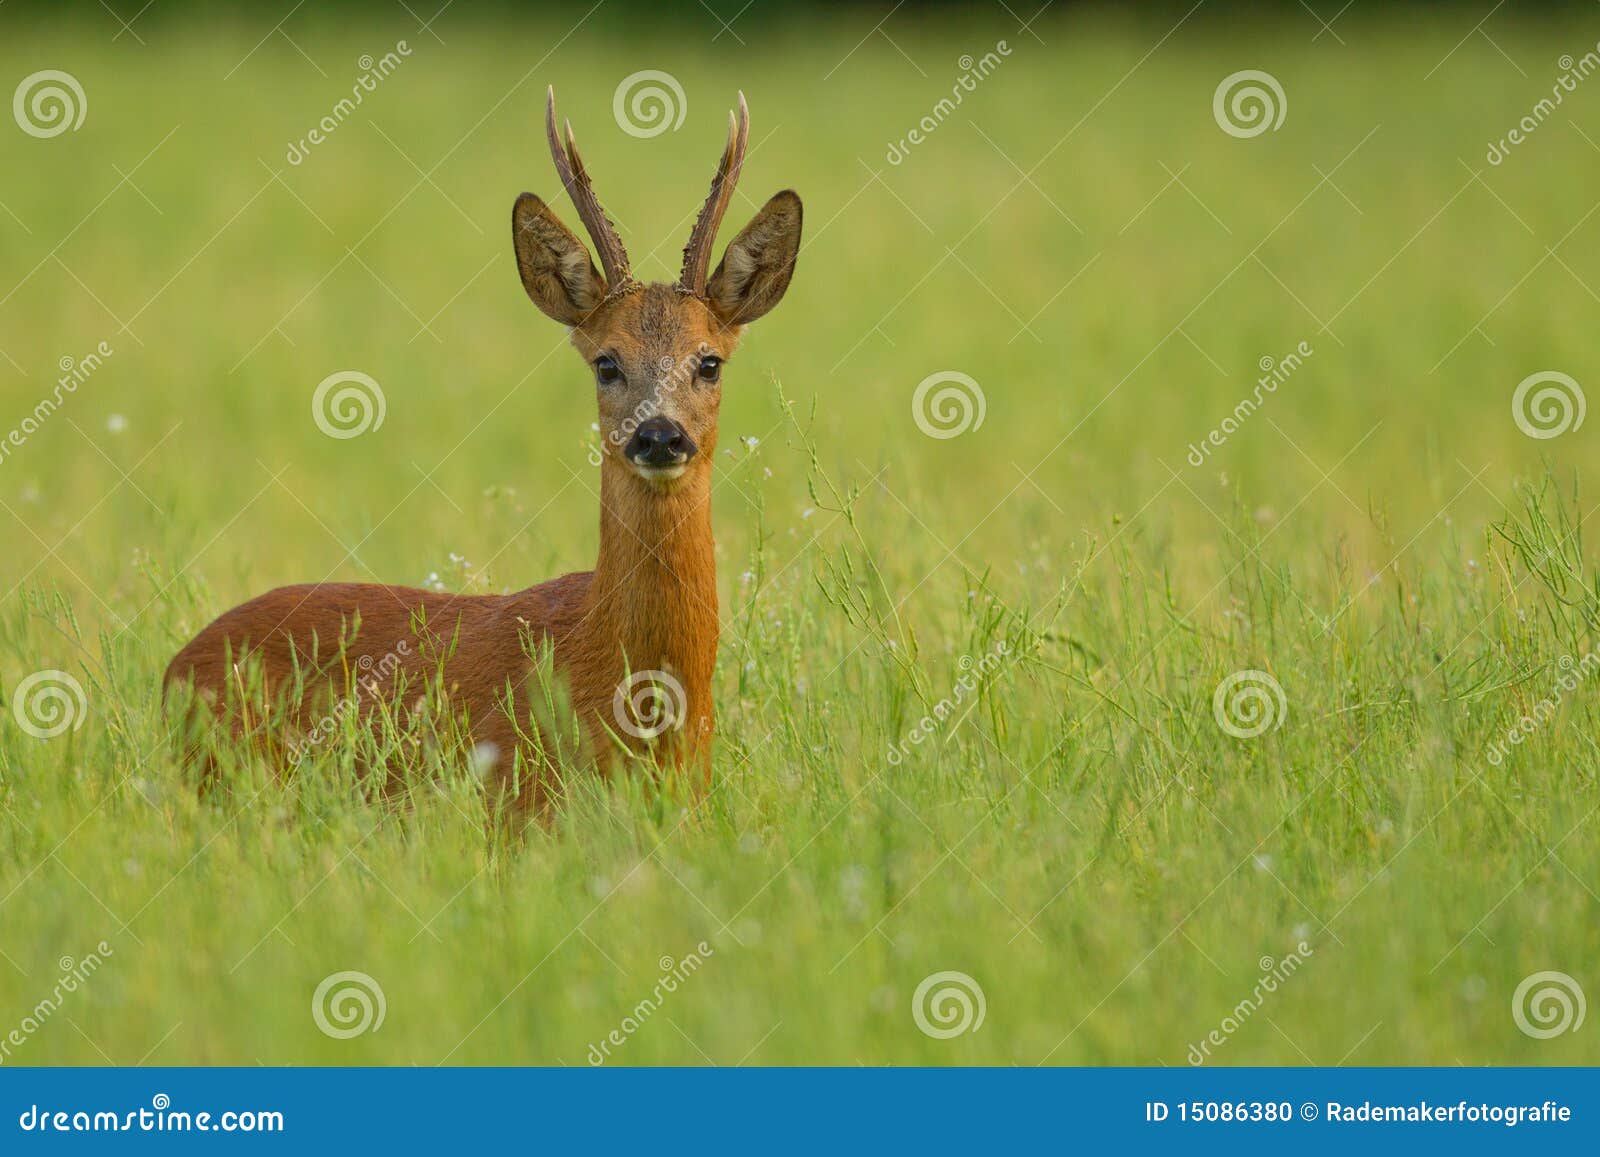 roe deer buck in buckwheat